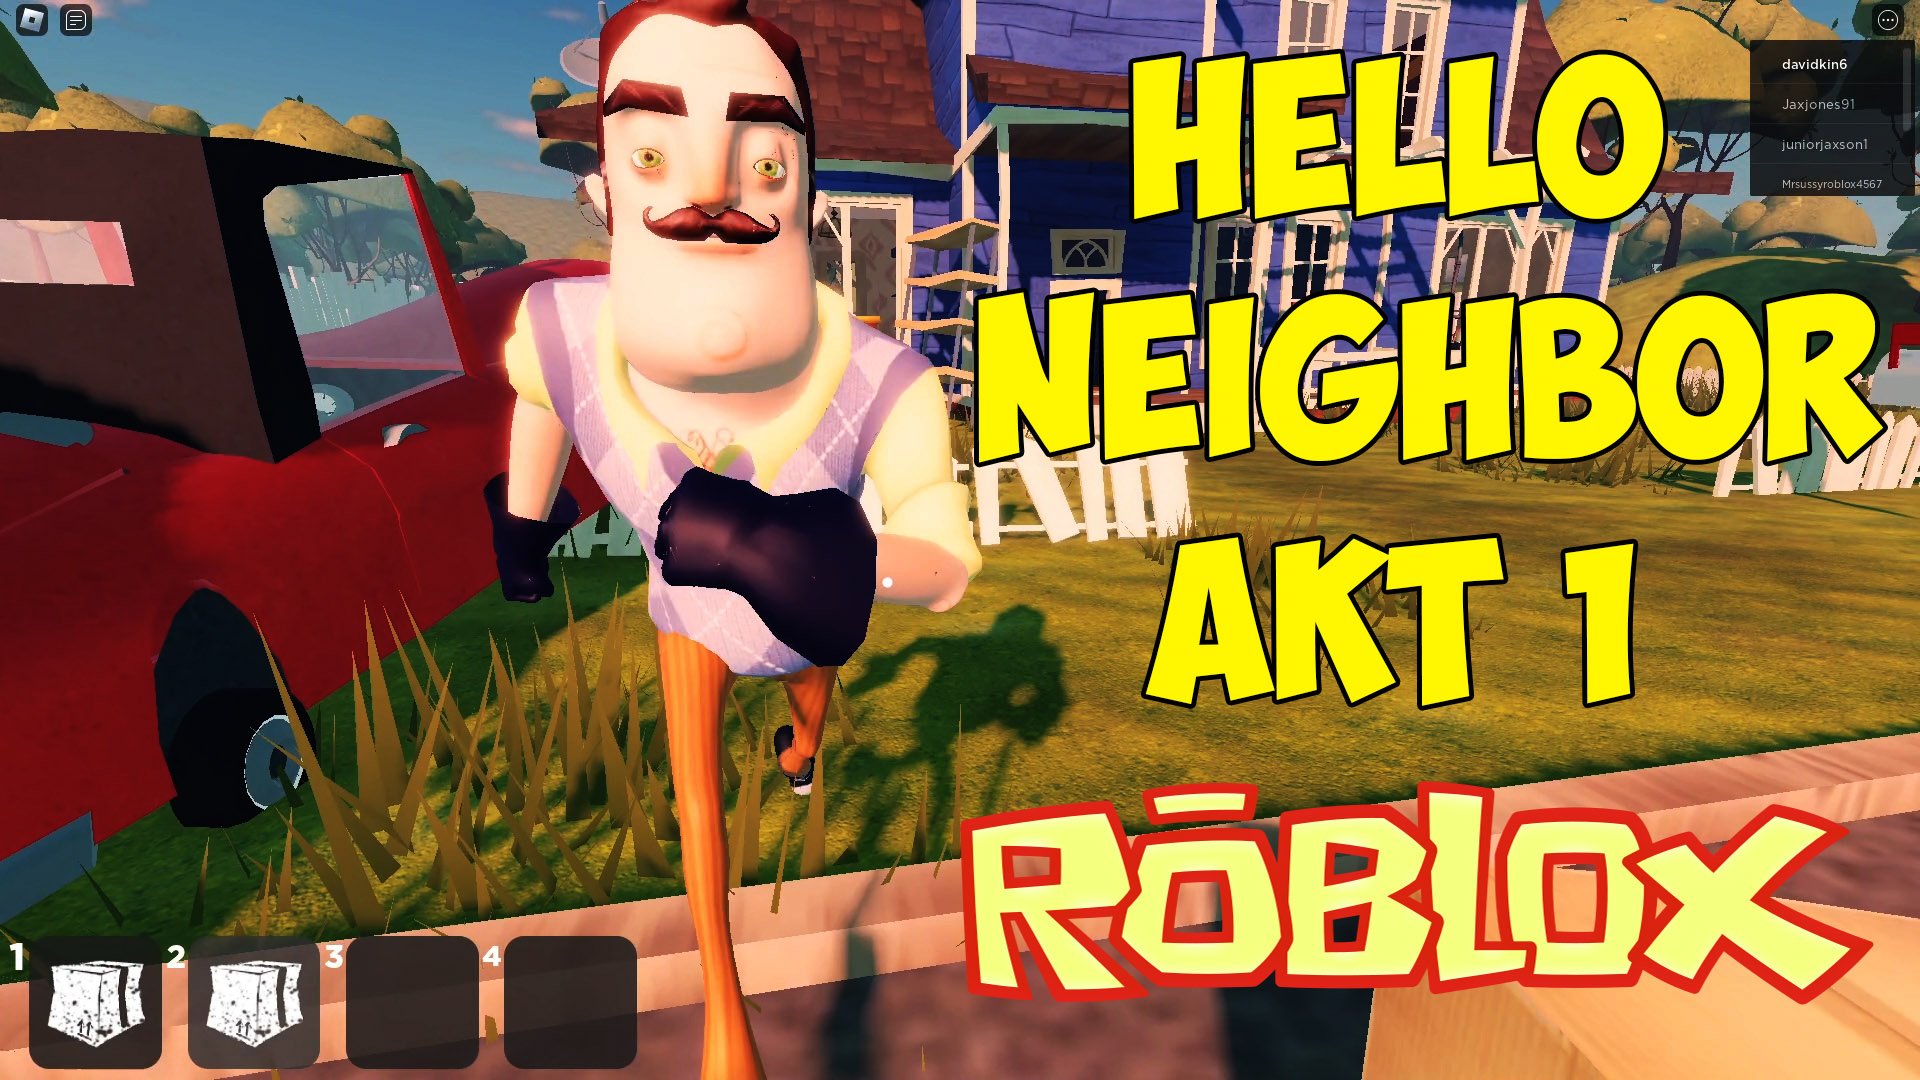 Привет сосед РОБЛОКС. Привет сосед РОБЛОКС акт 1. Видео привет сосед.